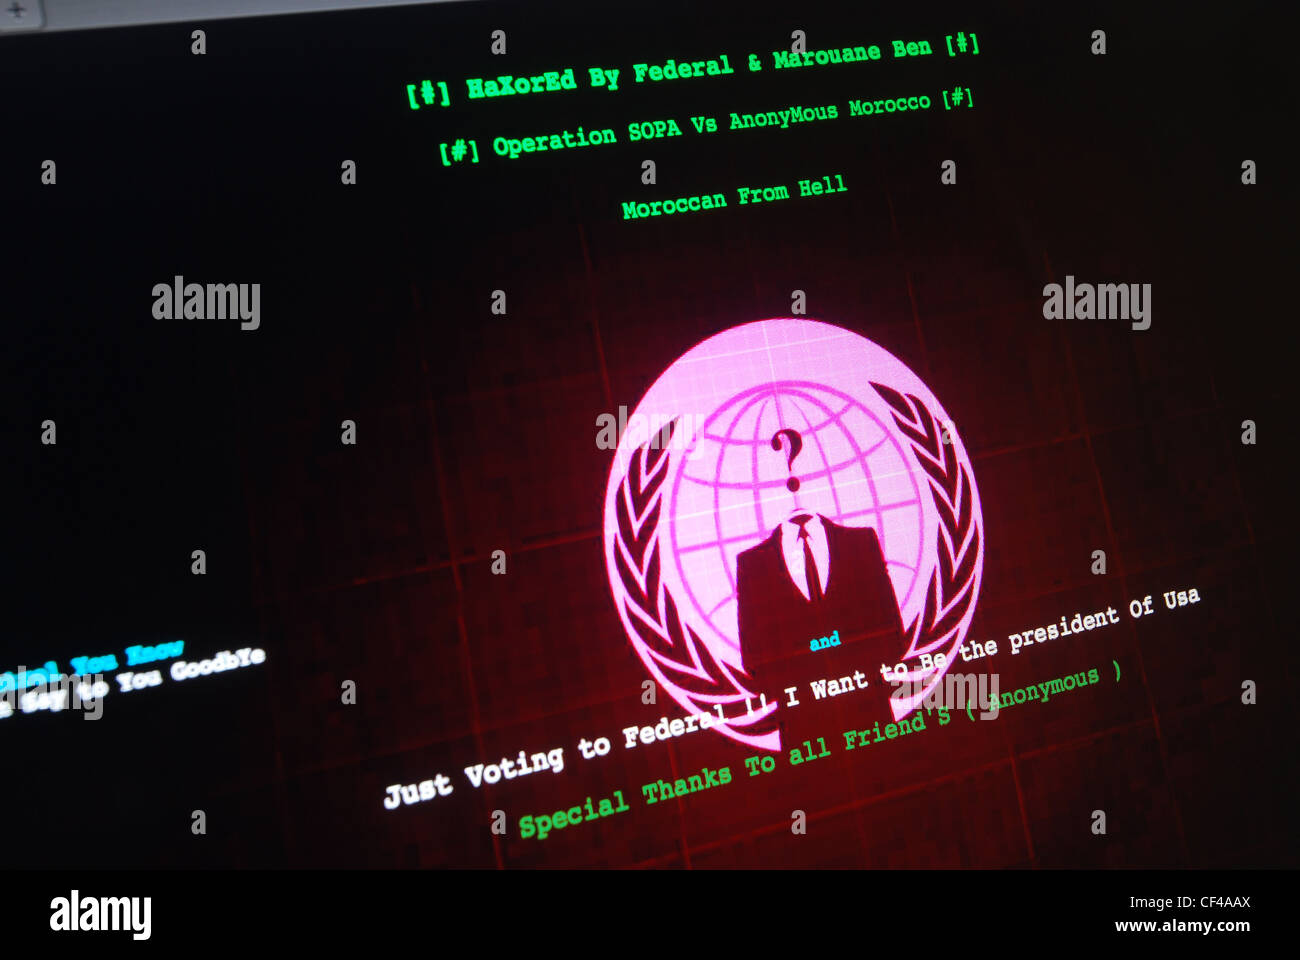 La schermata del messaggio su un sito web hacked in tutto il mondo dal gruppo hacktivist anonimo Foto Stock